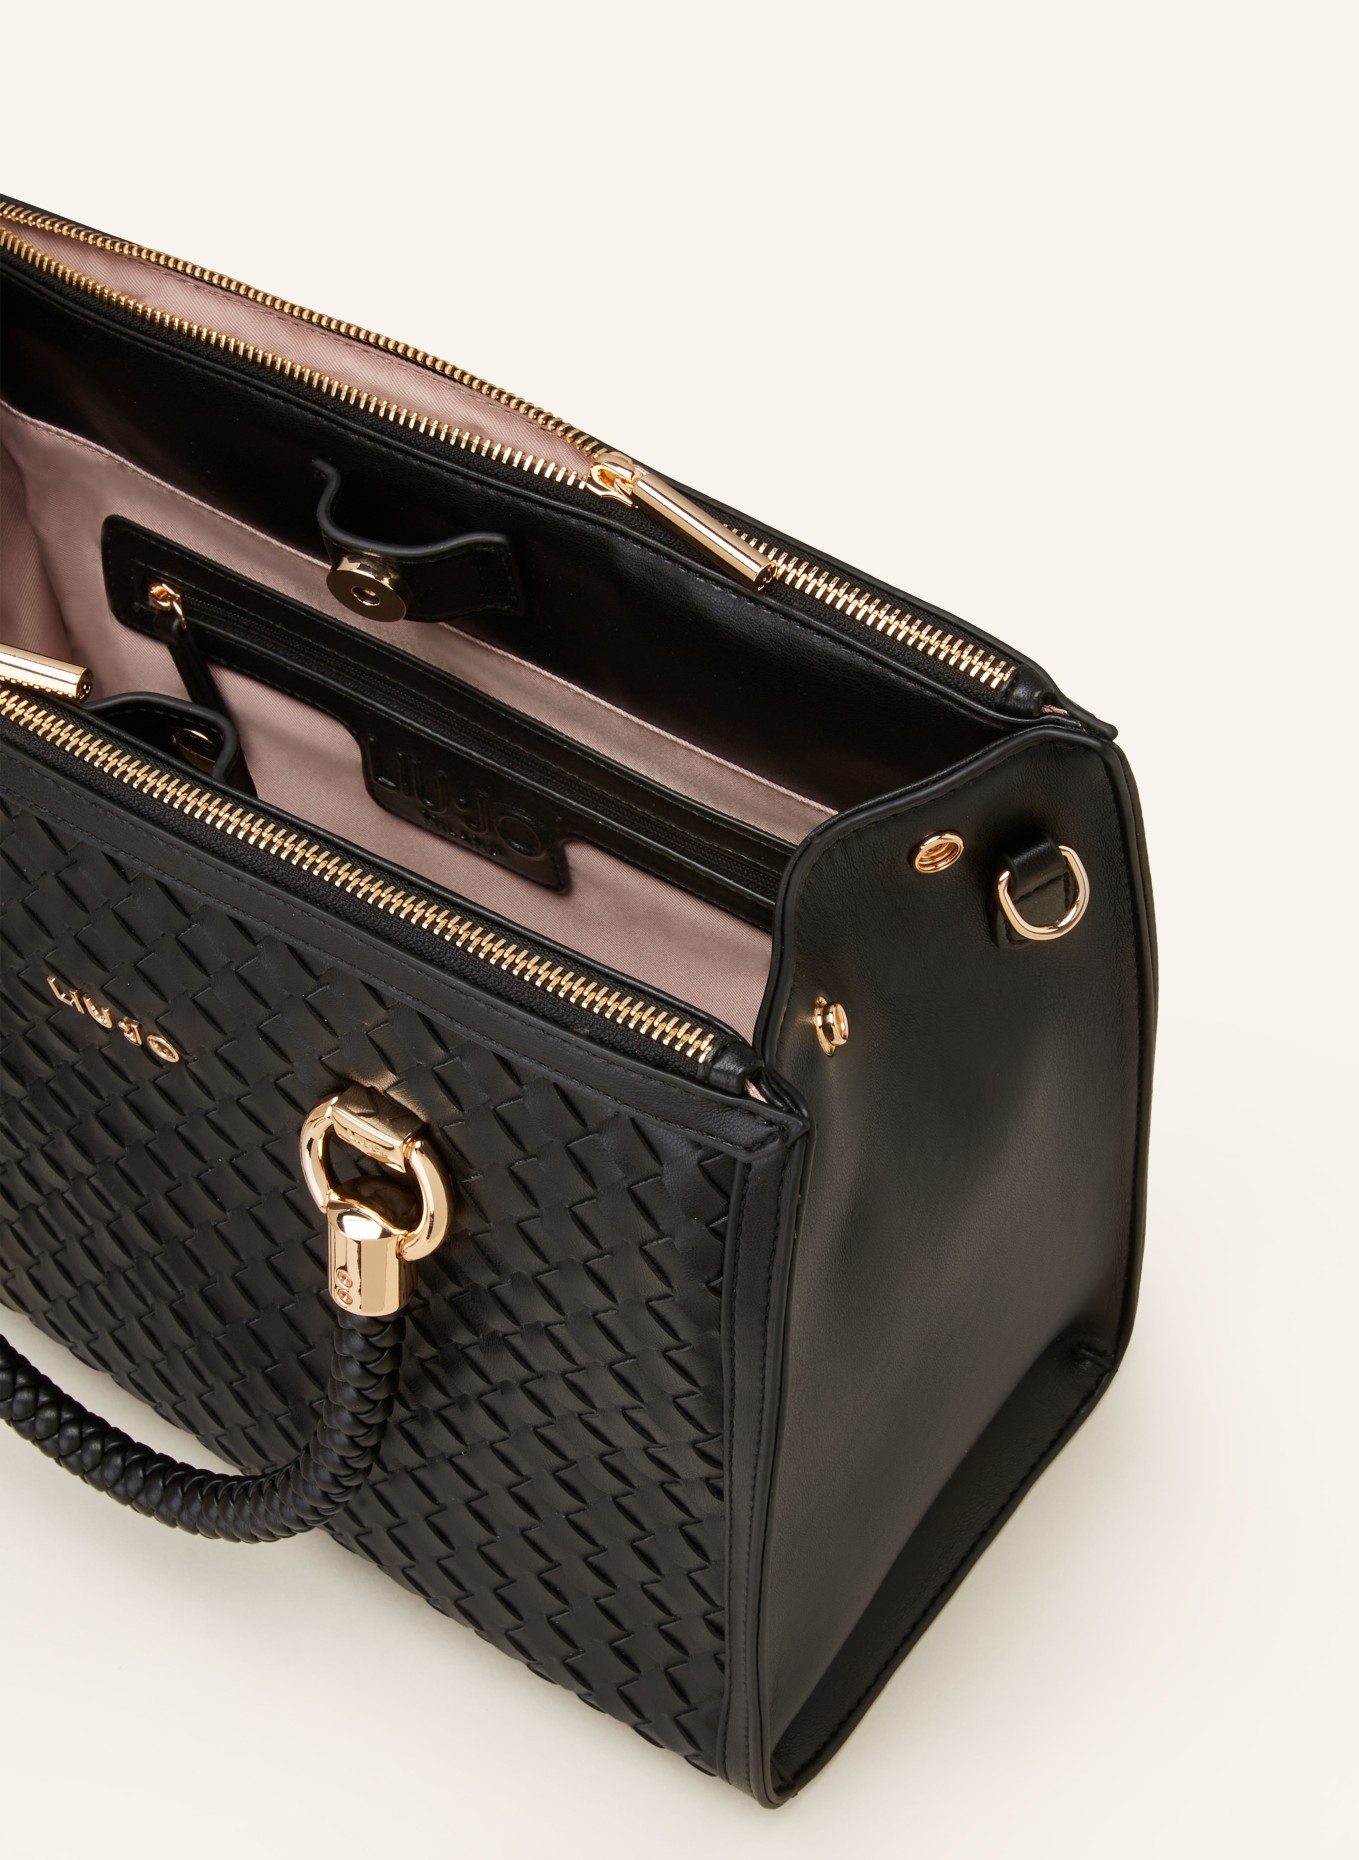 LIU JO Handbag, Color: BLACK (Image 3)